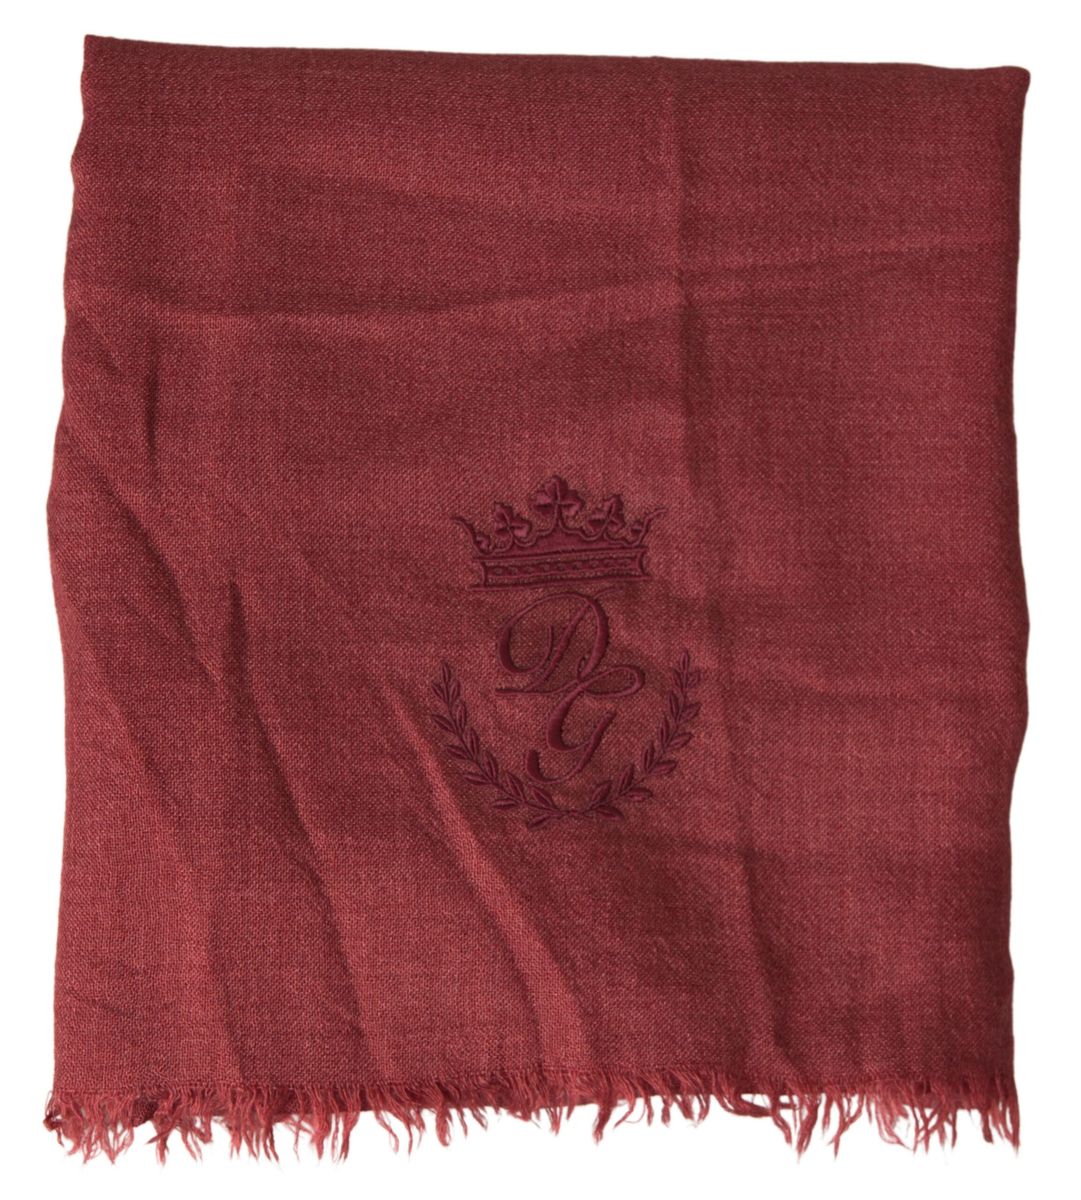 Dolce & gabbana luxury cashmere silk men's maroon scarf